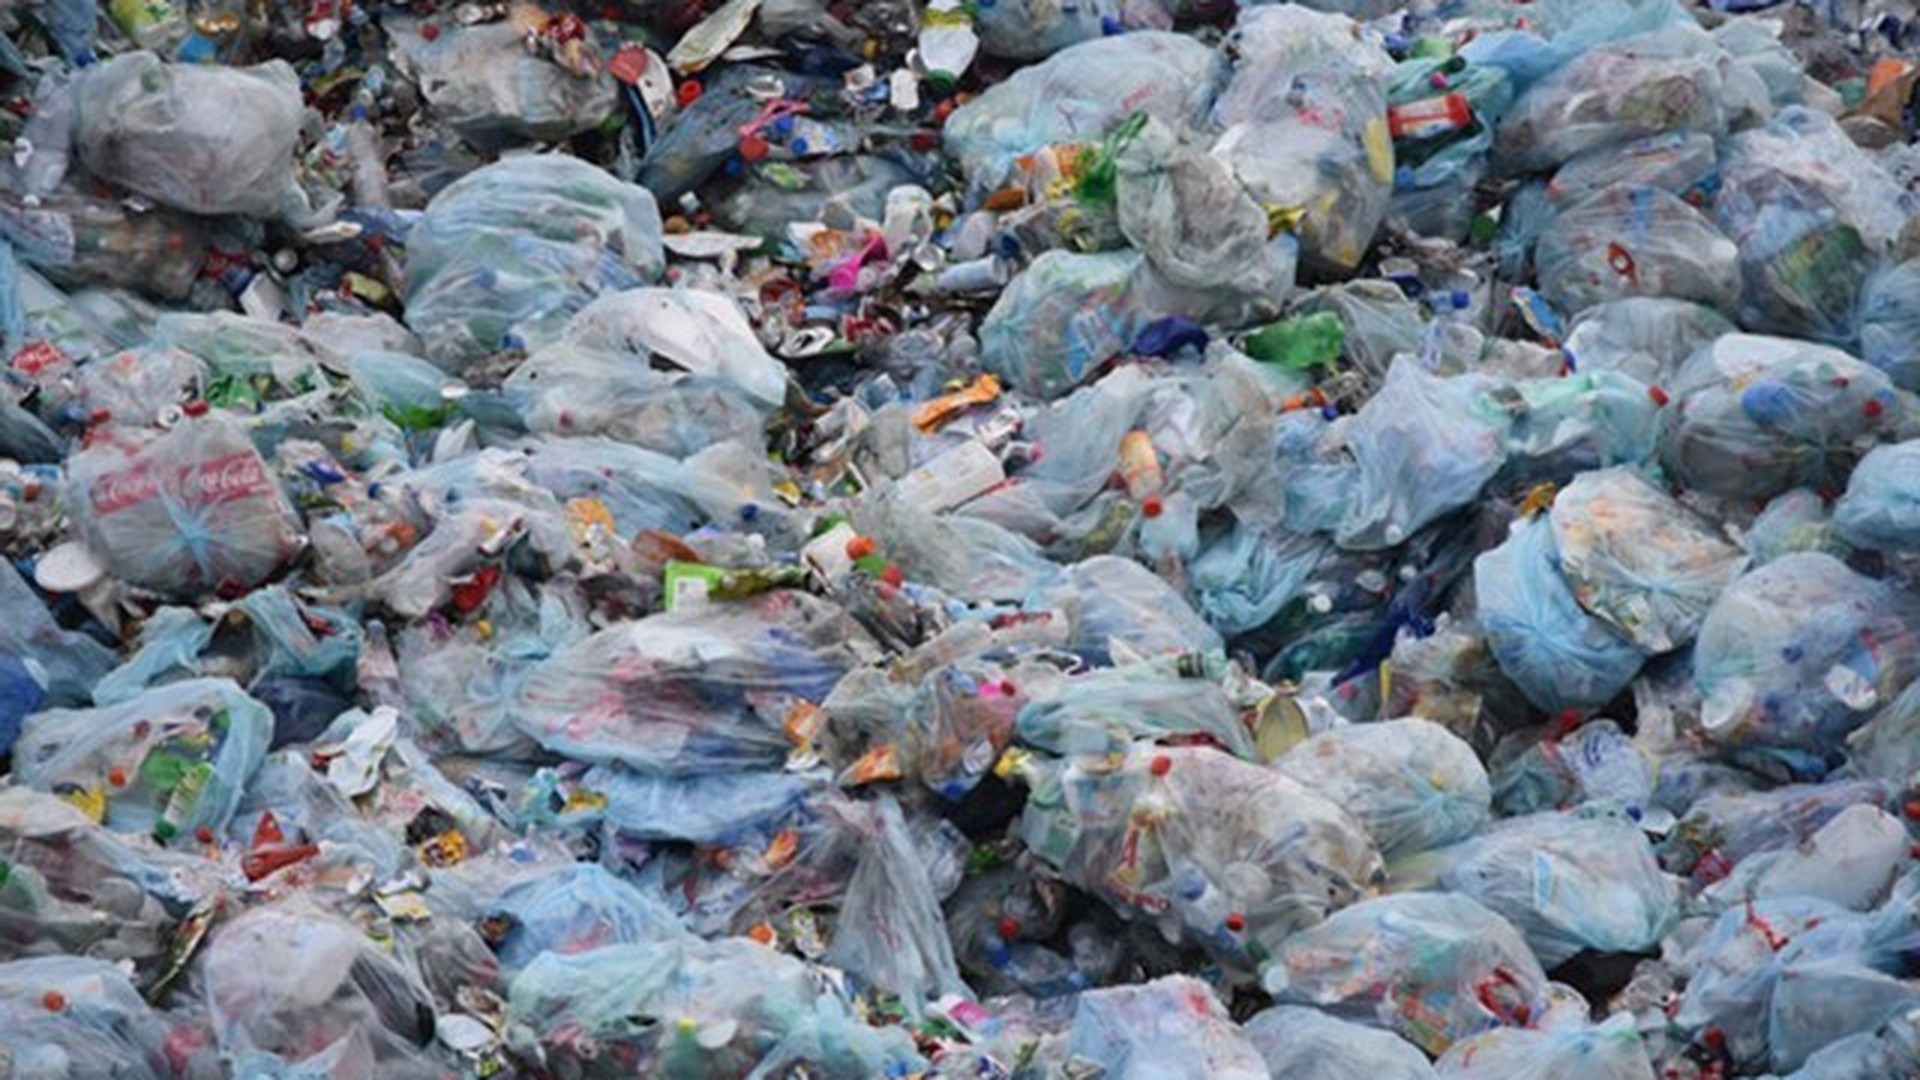 140 млн евро в завод по переработке мусора в Таразе готова вложить зарубежная компания